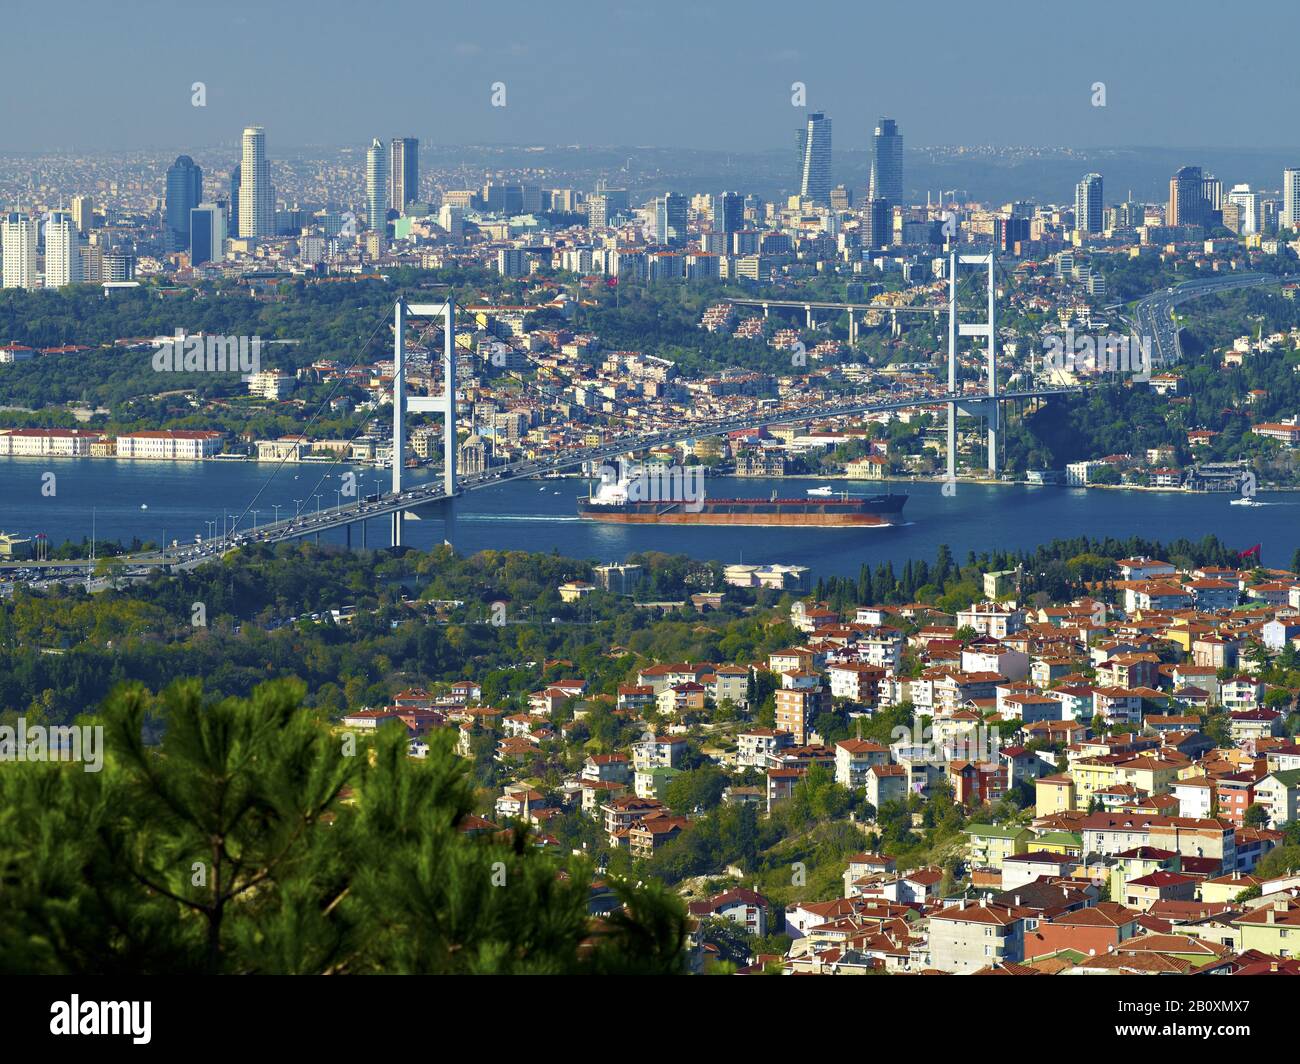 Vista desde Camlica Kumpir sobre el puente Bosporus con el distrito Ortaköy, Estambul, Turquía, Foto de stock